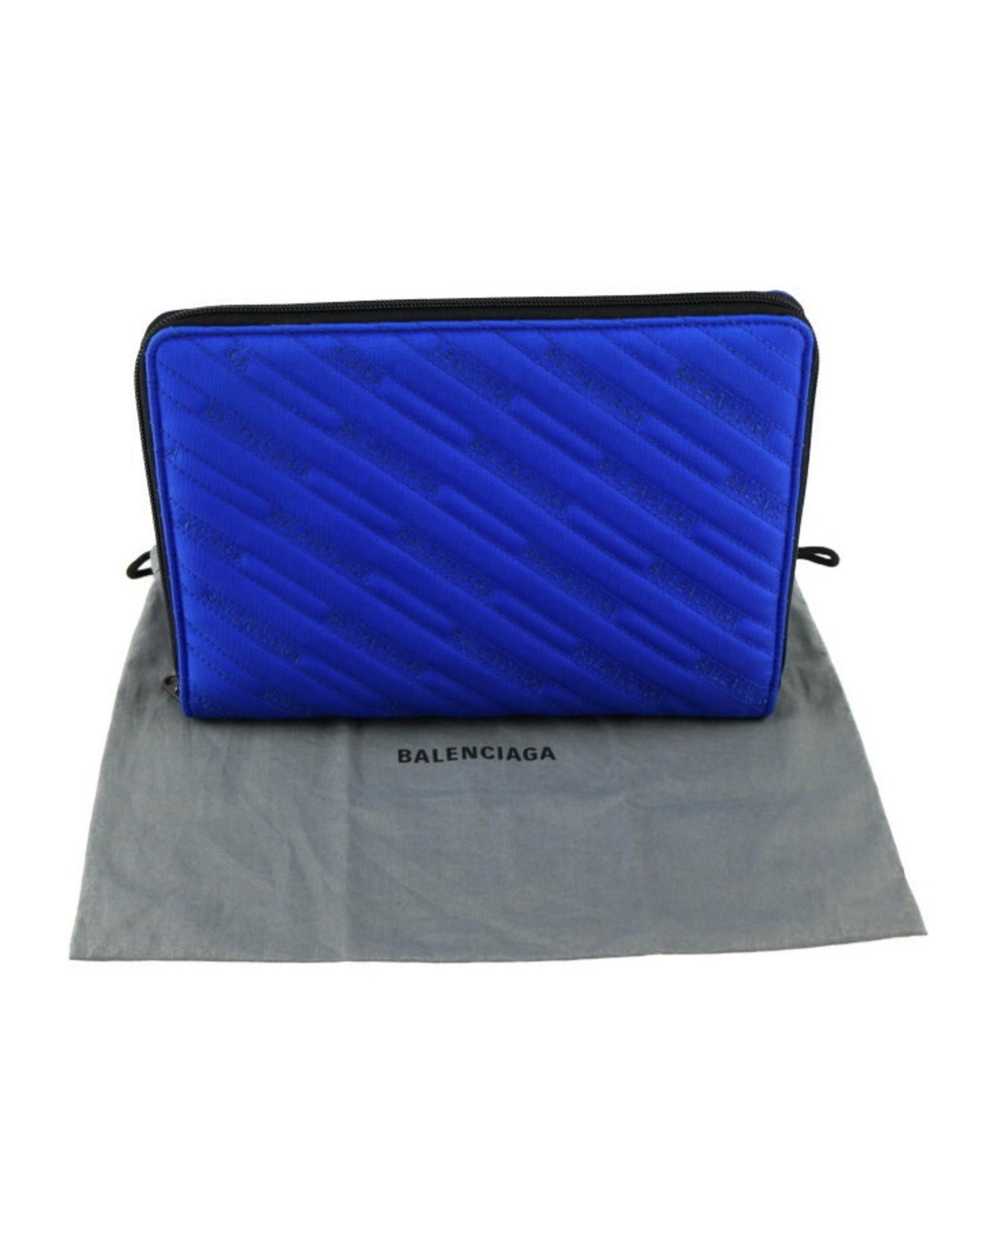 Balenciaga Blue Canvas Clutch Bag - image 8